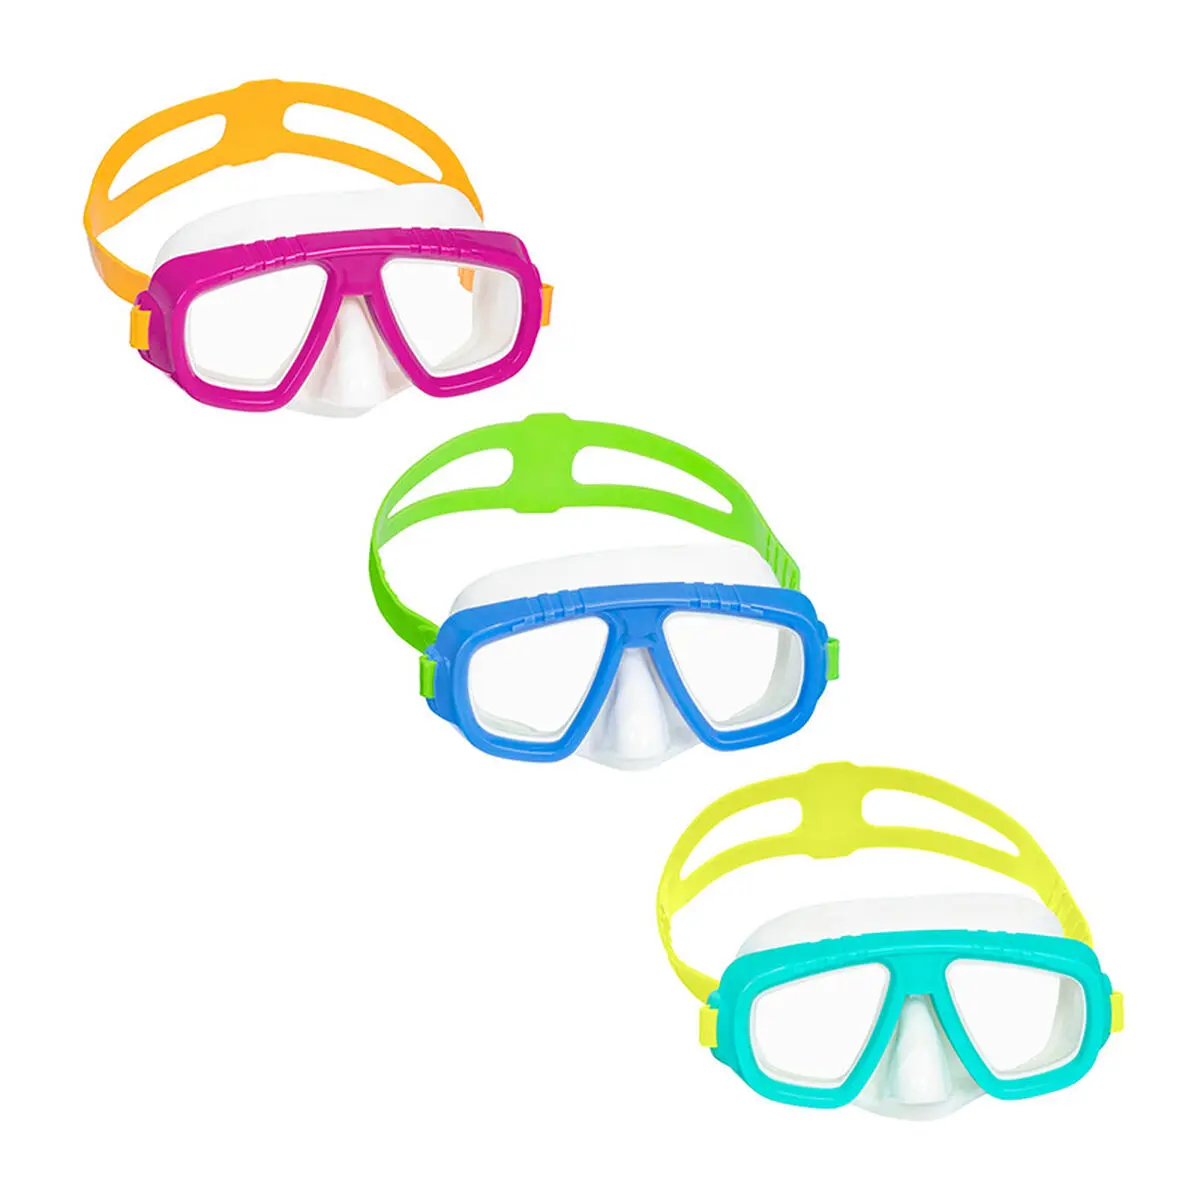 Maschera da immersione Bestway Per bambini Multicolore